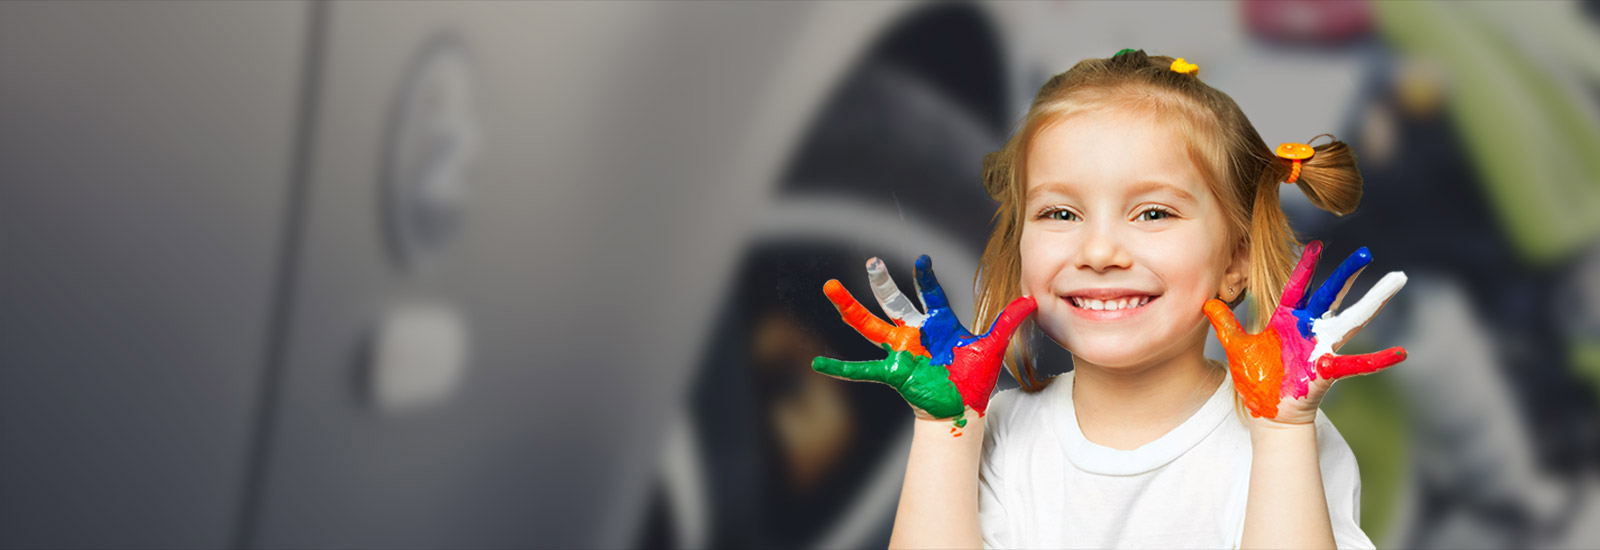 Une jeune fille montre ses mains recouvertes de peinture